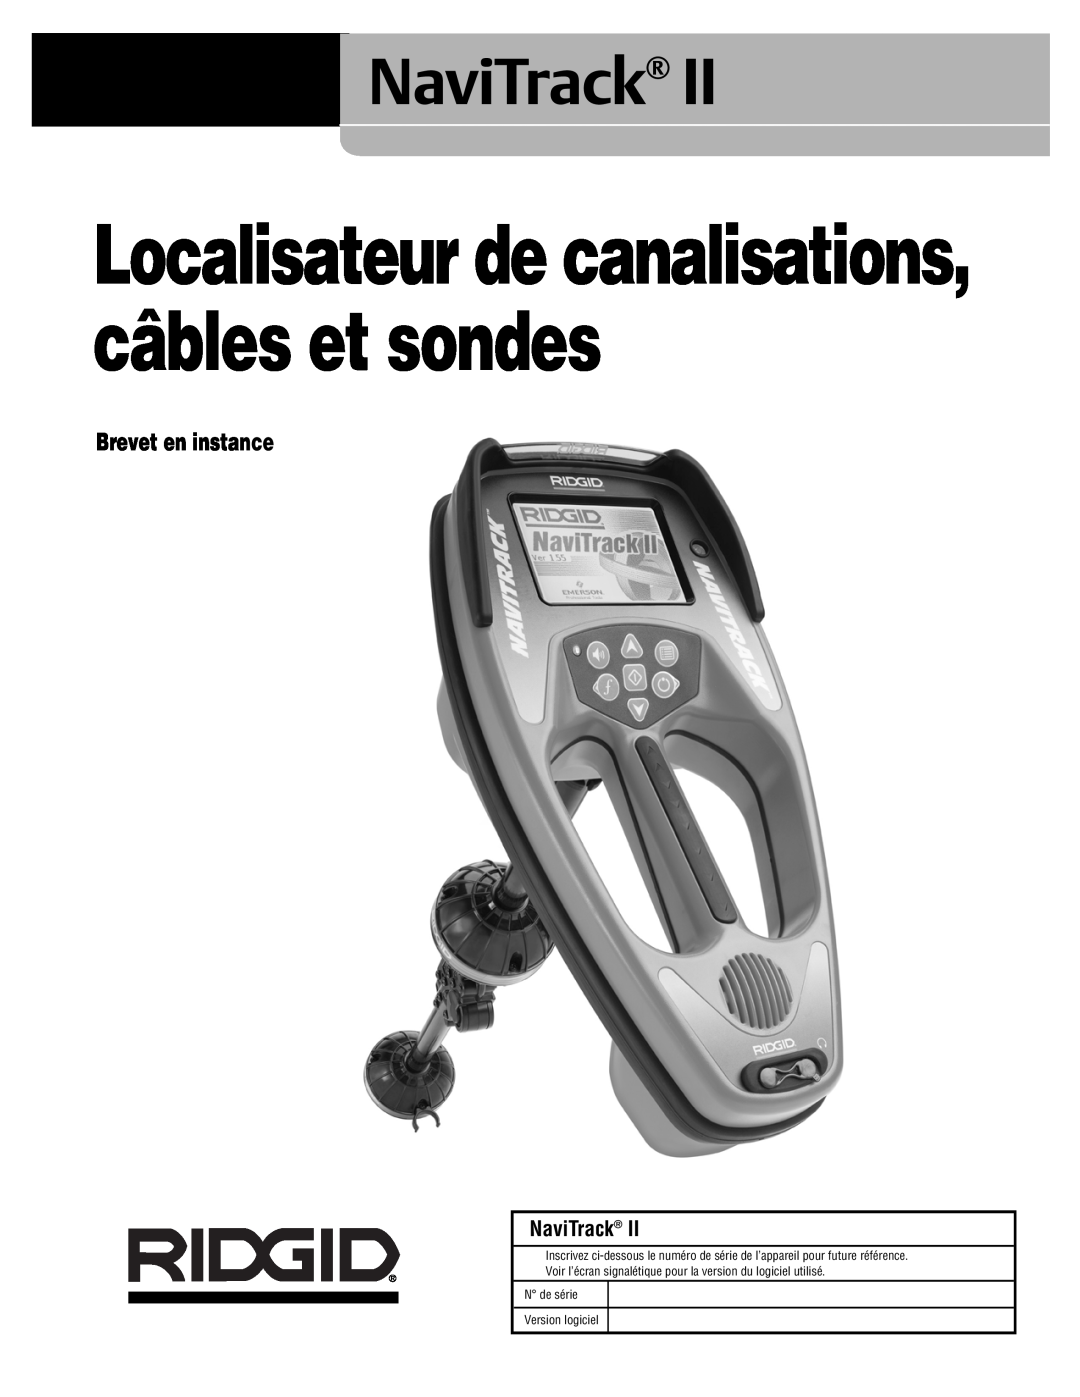 RIDGID Metal Detector manual Brevet en instance, NaviTrack, Localisateur de canalisations, câbles et sondes 